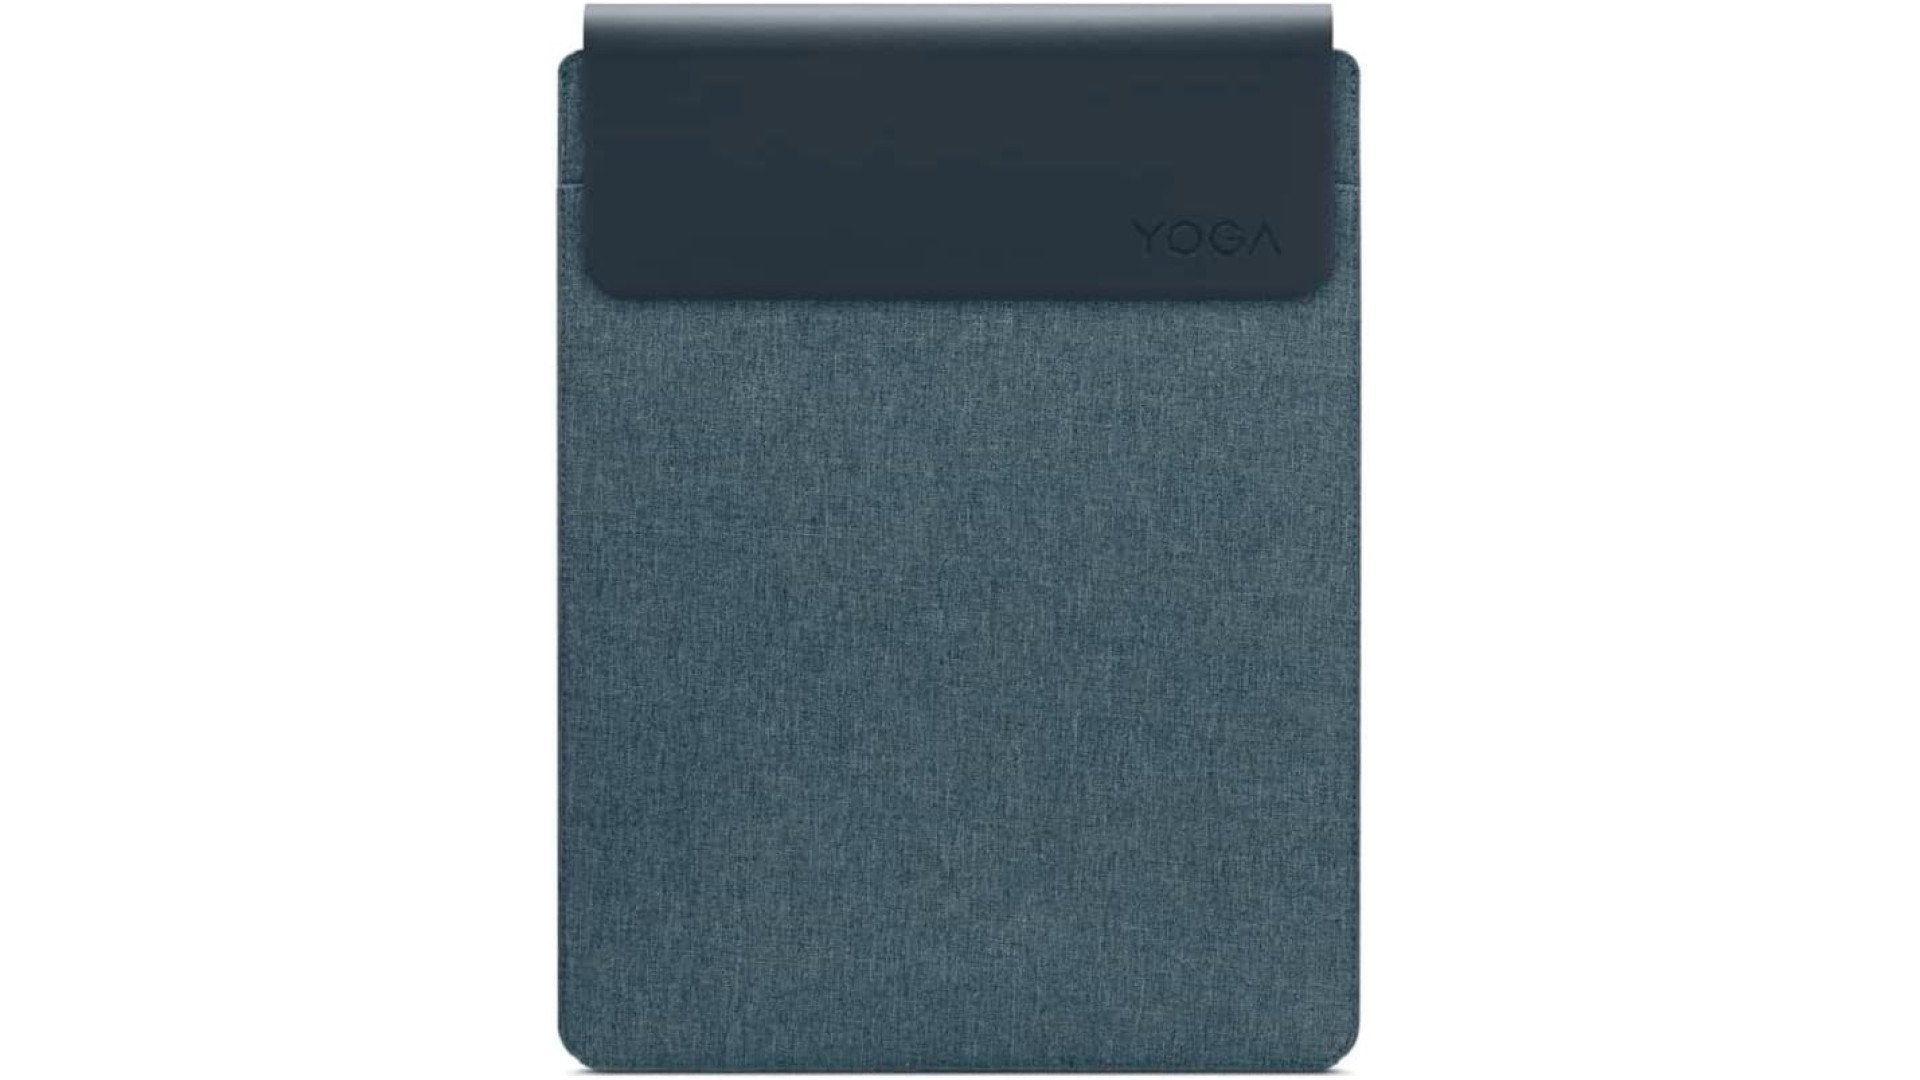 ნოუთბუქის ჩანთა Lenovo  Yoga Laptop Sleeve 14 Inch Notebook/Tablet Compatible with MacBook Air/Pro - Slim Eco-Friendly Lightweight Case with Accessory Pocket & Magneti